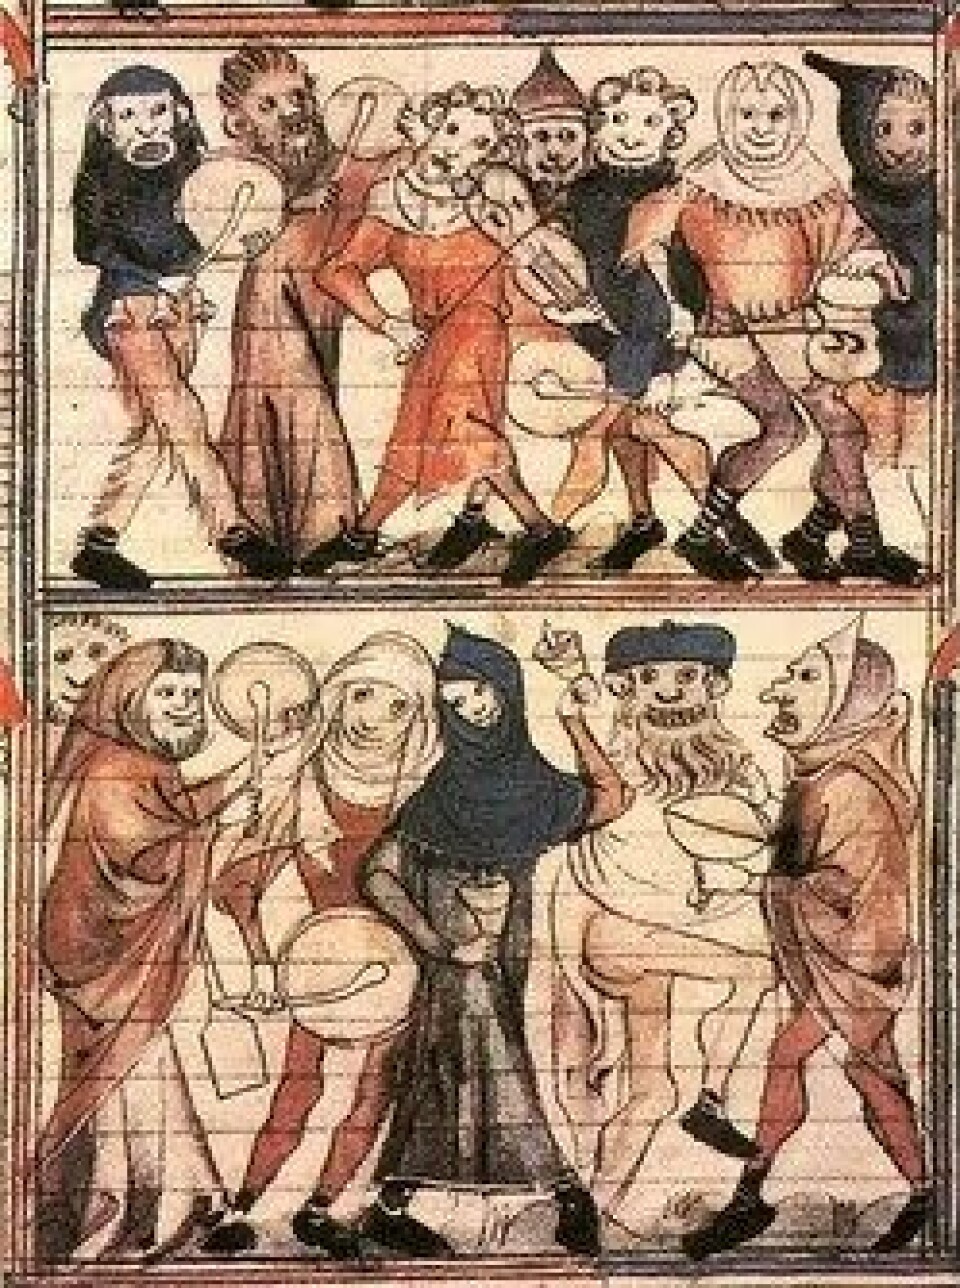 I middelalderen snudde dårenes fest, «The Feast of Fools», alt på hodet. Slik provoserer julefortellingen tingenes orden, om mulig hakket mer dramatisk. (Kilde: Wikimedia Commons)